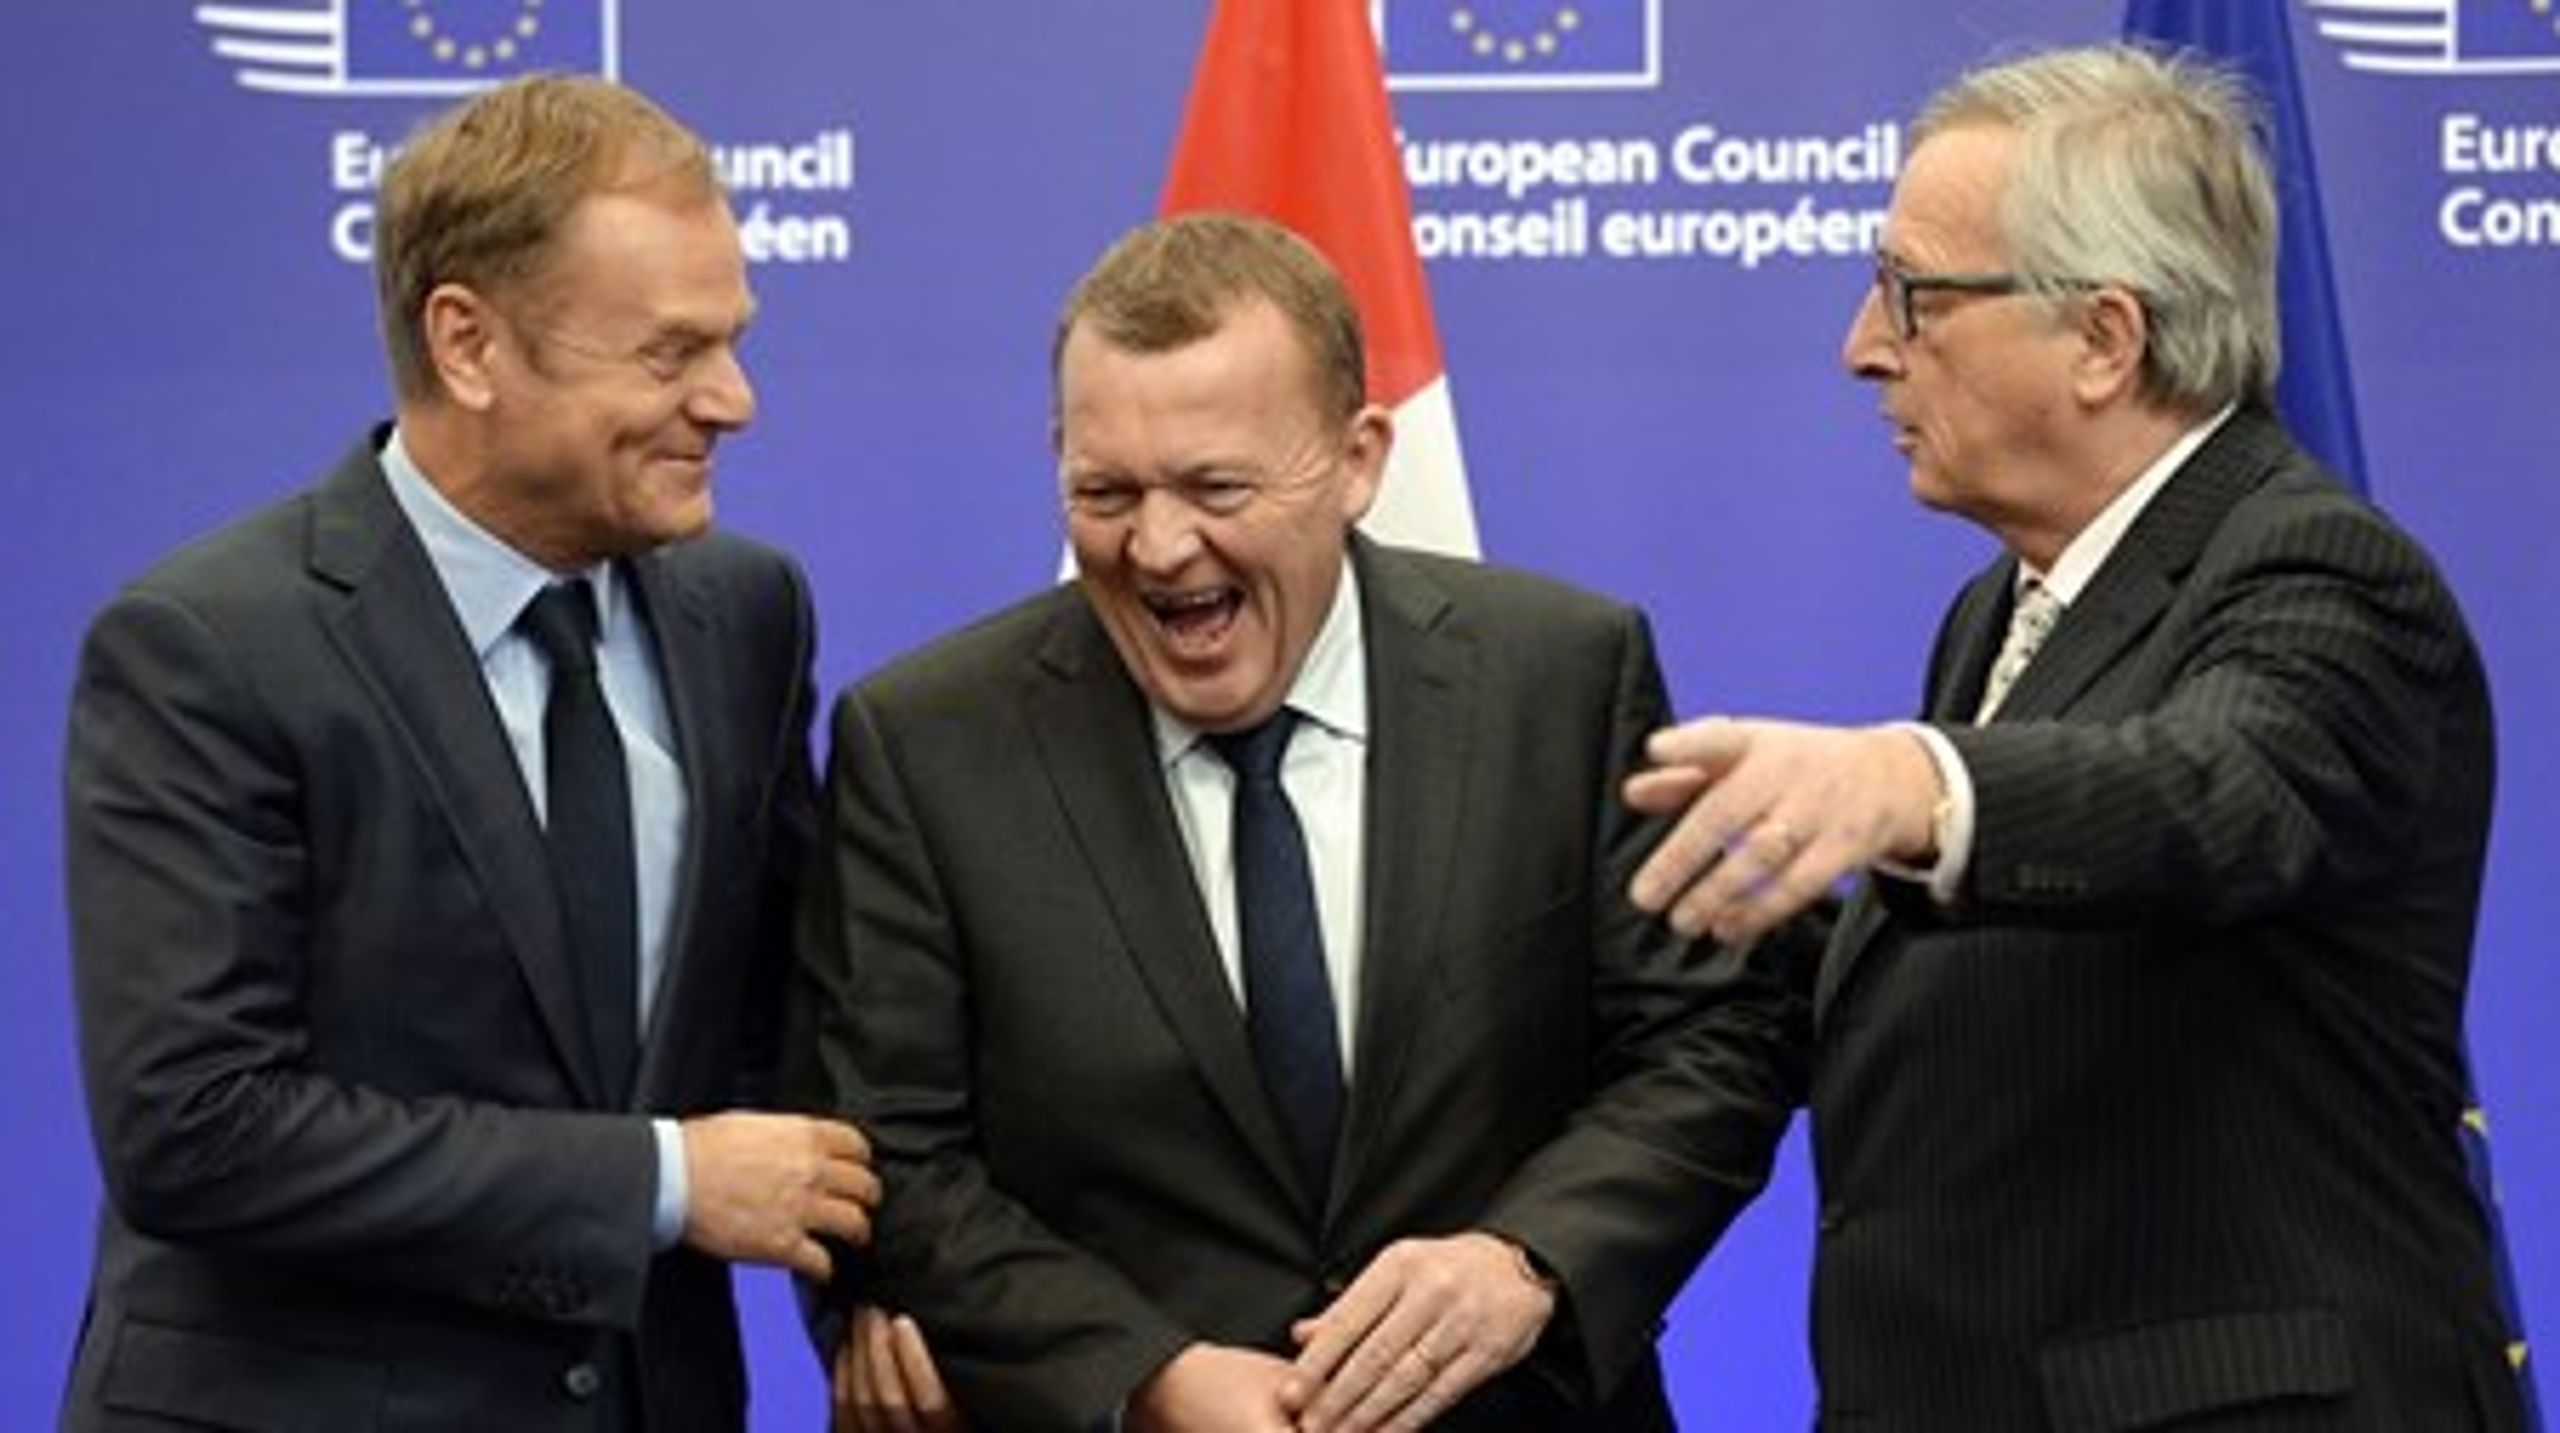 Der var god stemning mellem statsminister Lars Løkke Rasmussen (V), EU-Kommissionsformand Jean-Claude Juncker og formanden for Det Europæiske Råd, Donald Tusk, før de tre holdt møde om den danske situation efter folkeafstemningen. Men budskabet fra Tusk og Juncker var alvorligt: Danmark kan ikke være fuldt med i Europol.